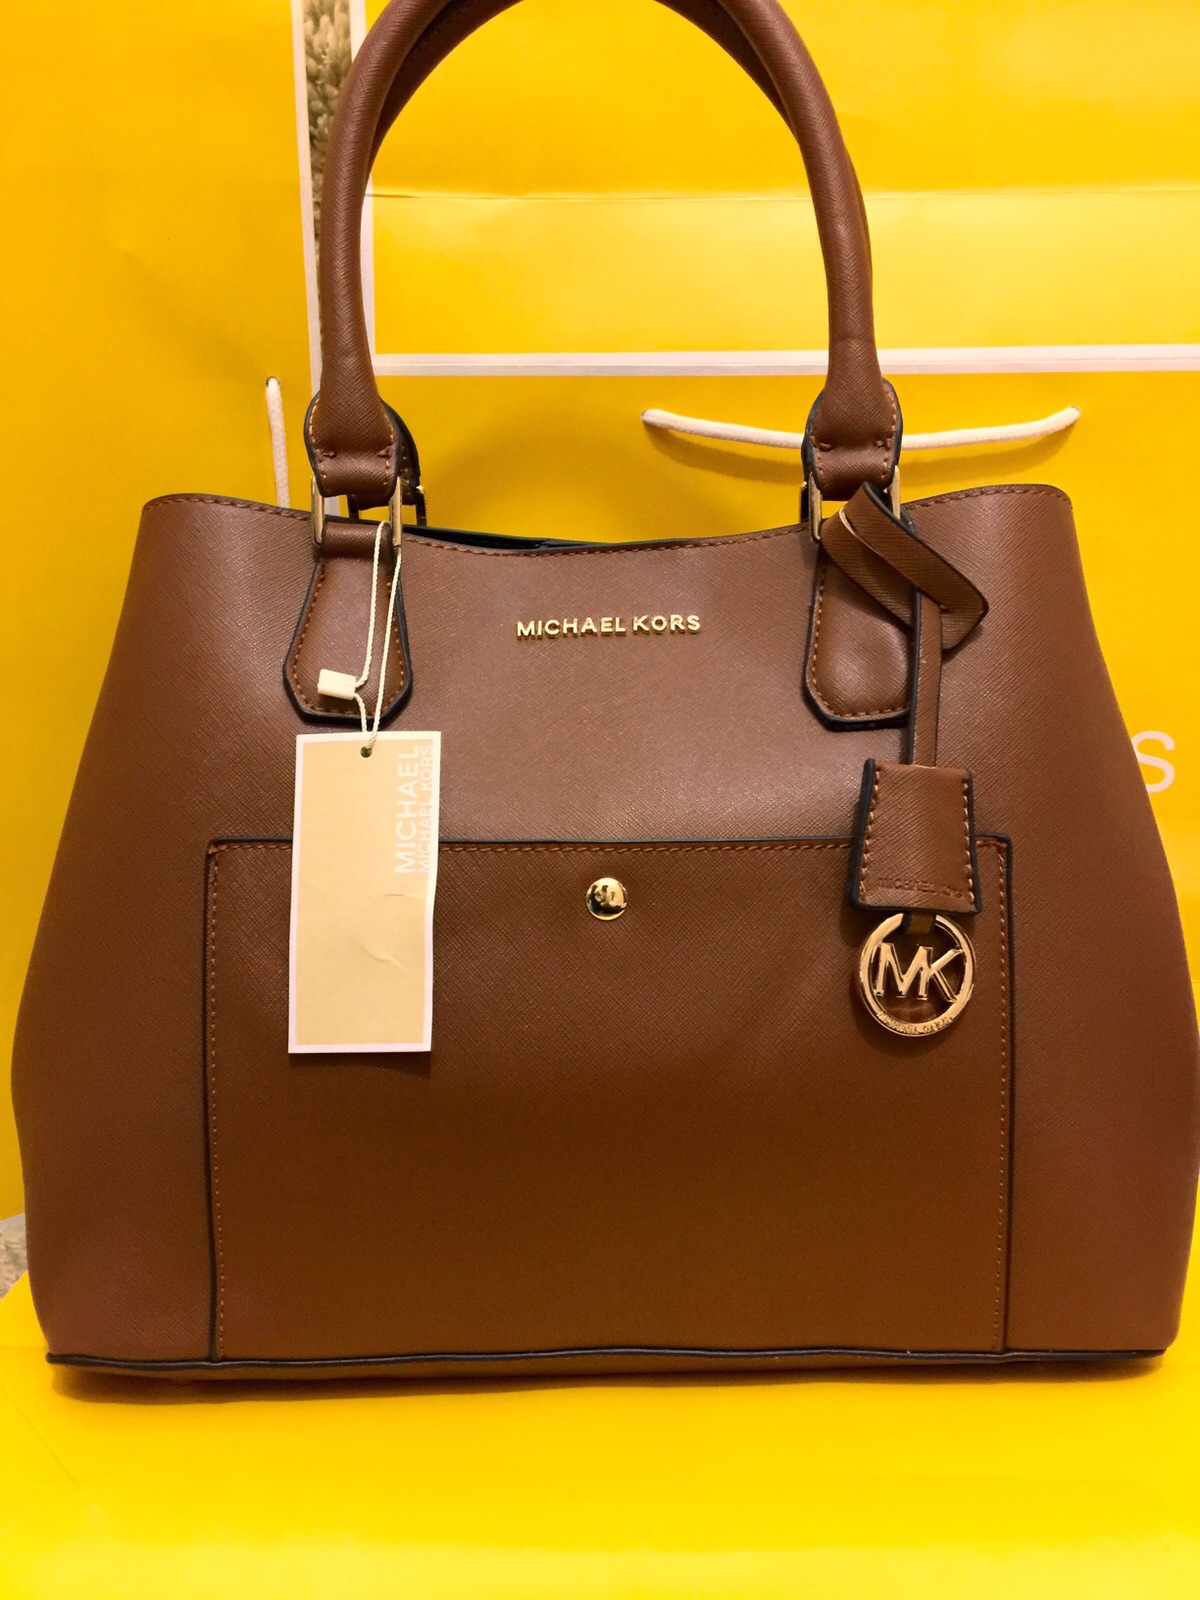 MICHAEL KORS Bag - Buy or Sell MK women's bags online! - Vestiaire  Collective-cheohanoi.vn